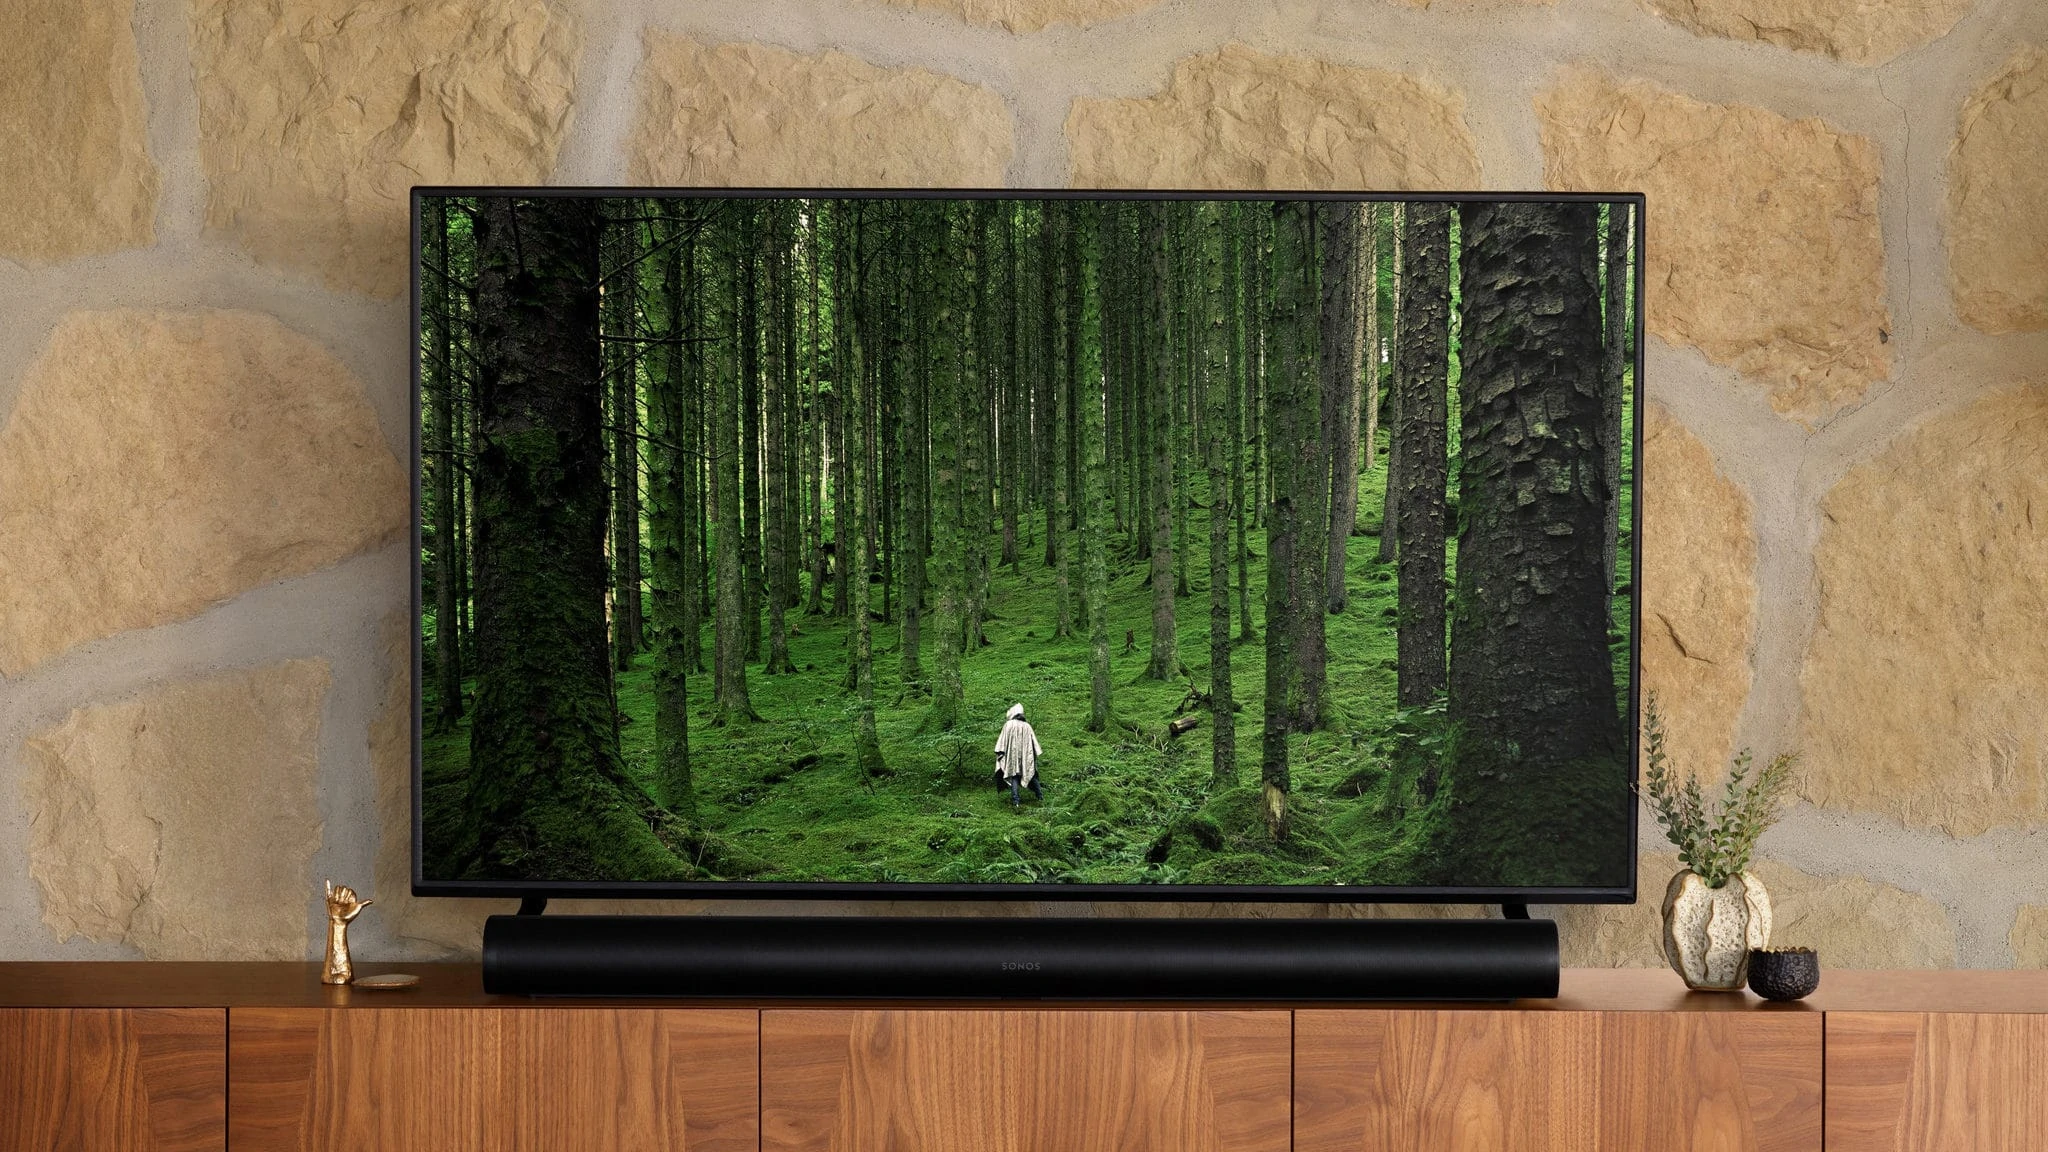 Sonos Arc in beeld voor een televisie op een televisiemeubel.